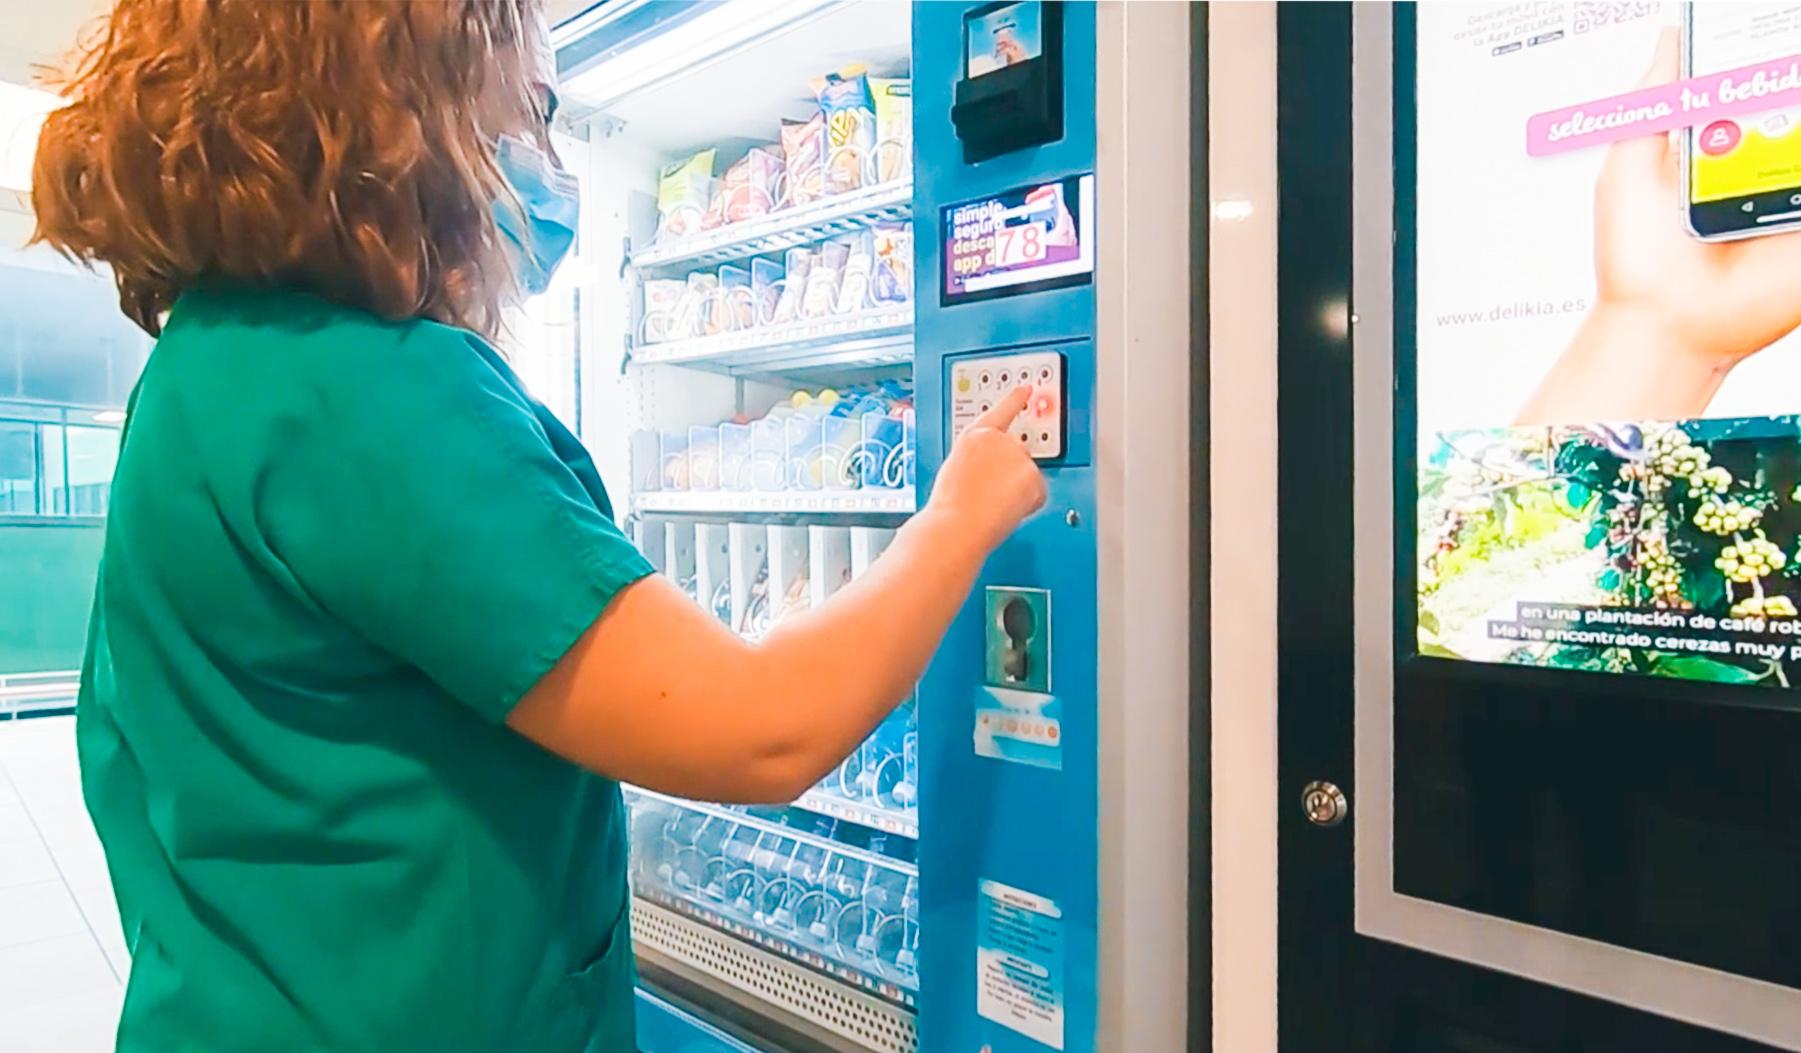 El Hospital de Jerez estrena una tecnología innovadora que permite utilizar las máquinas de vending sin contacto